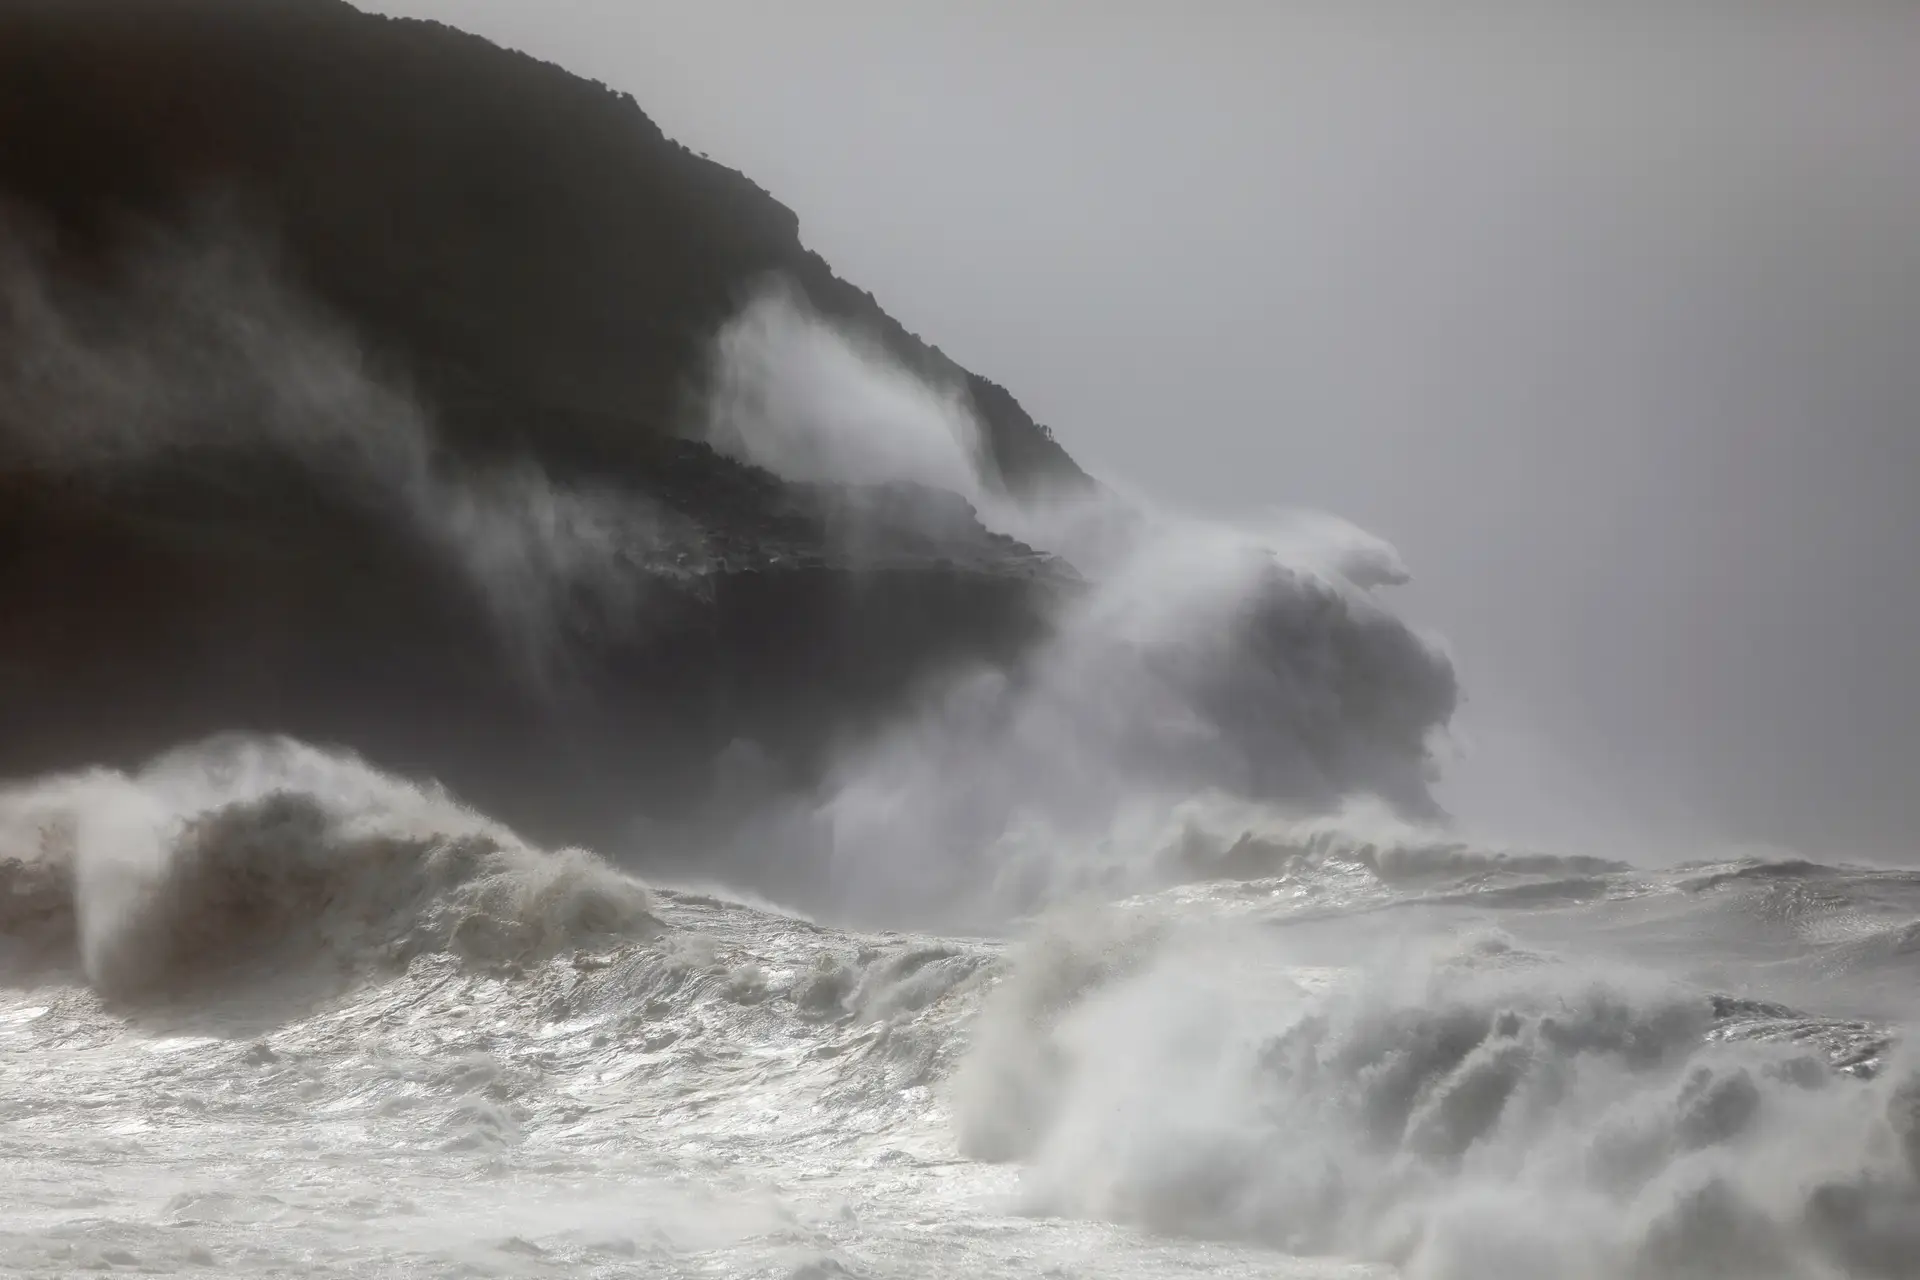 Emitido aviso de agitação marítima forte para a Madeira até sexta-feira